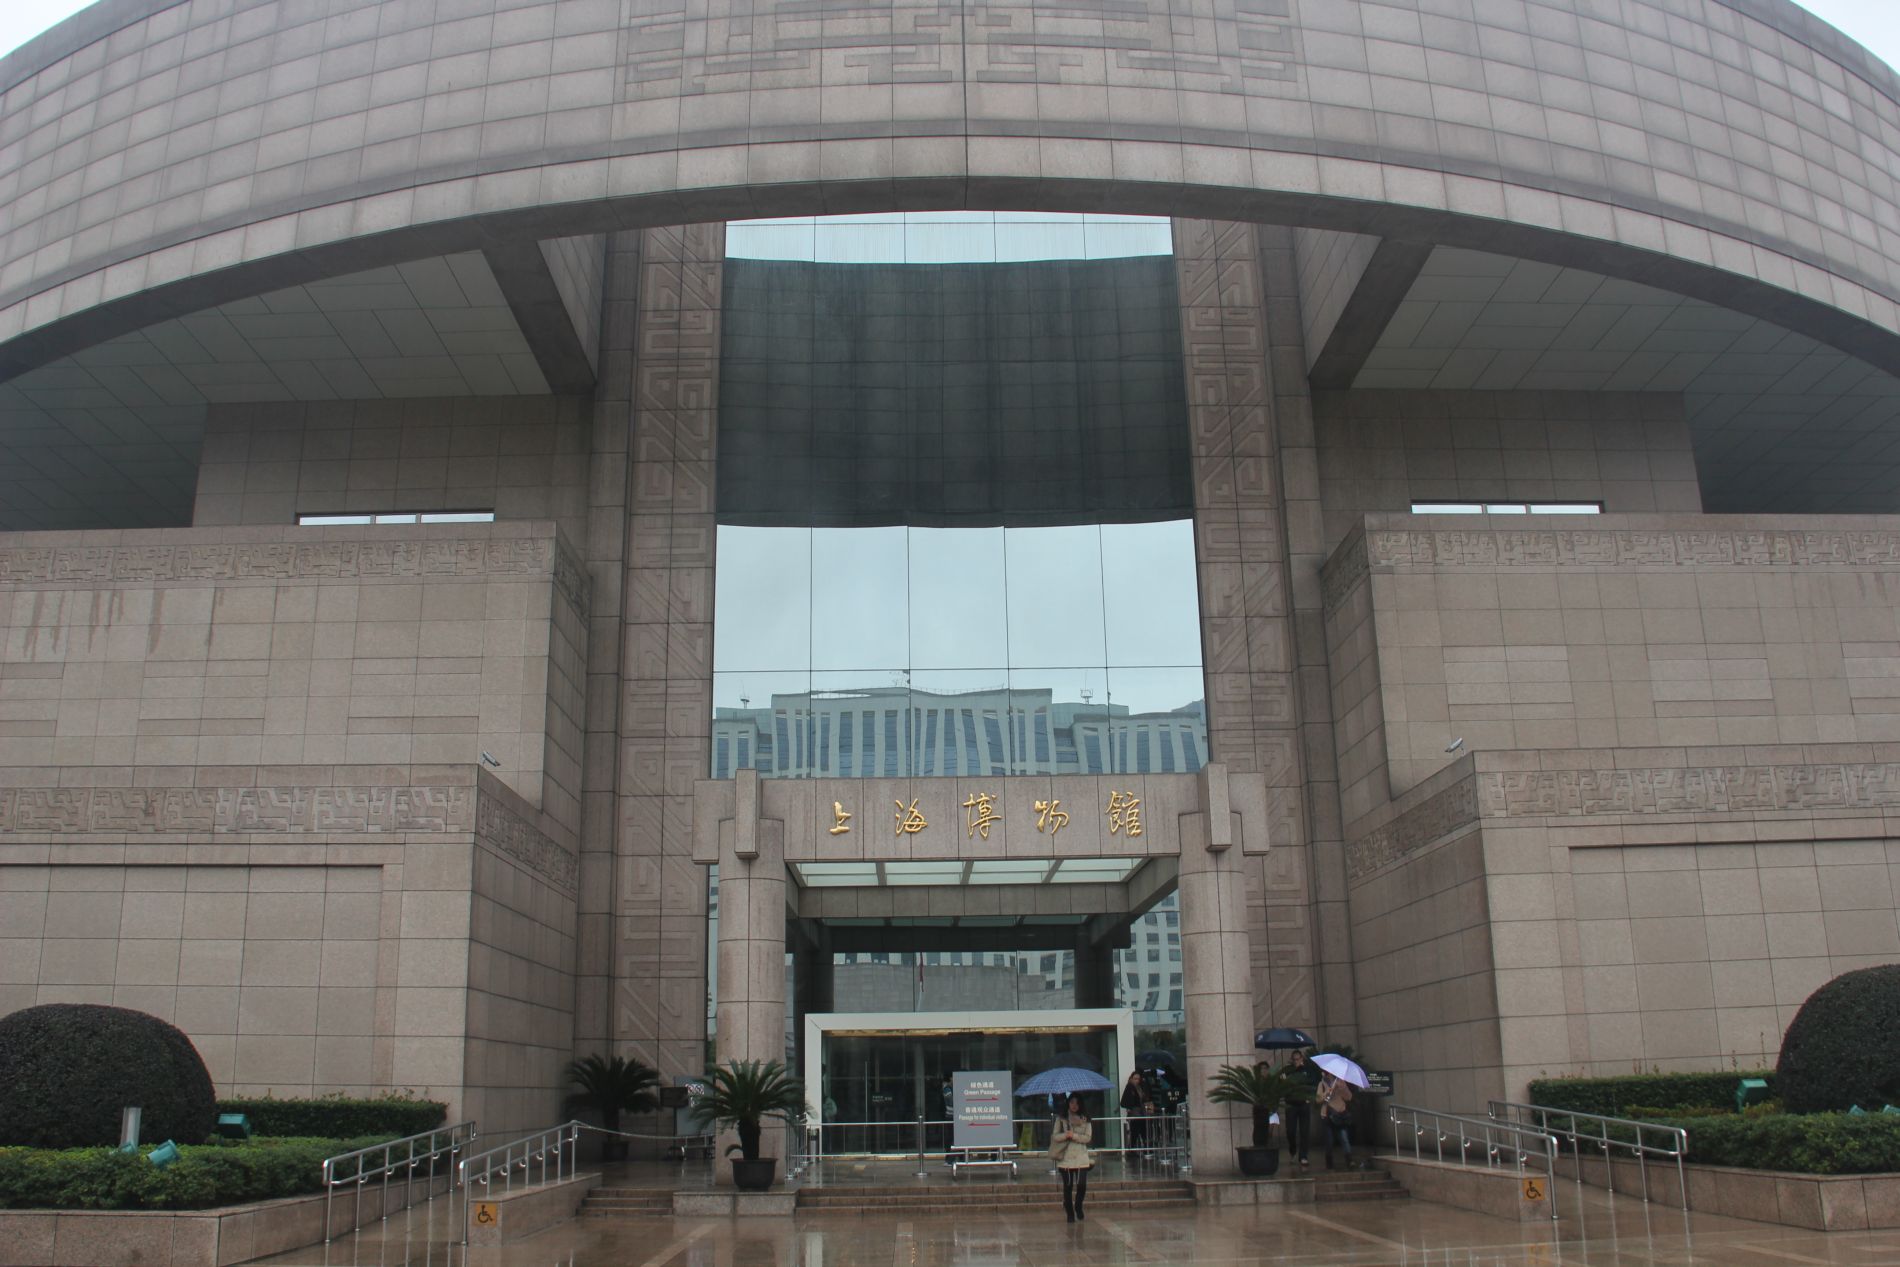 The Shanghai Museum